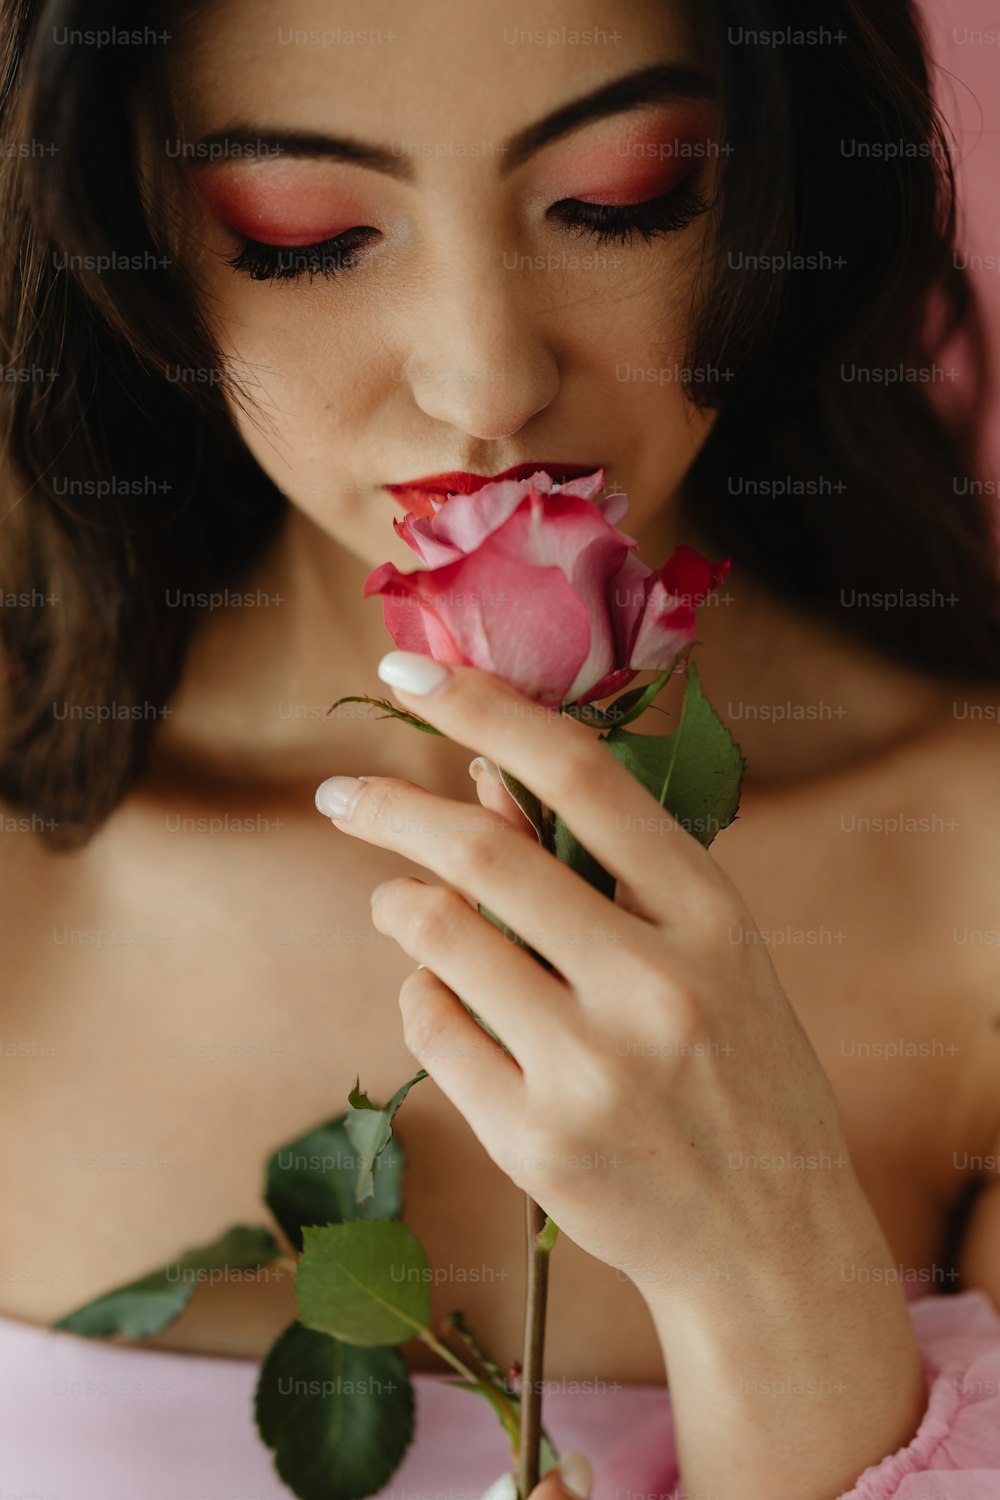 Una mujer con un vestido rosa sosteniendo una rosa